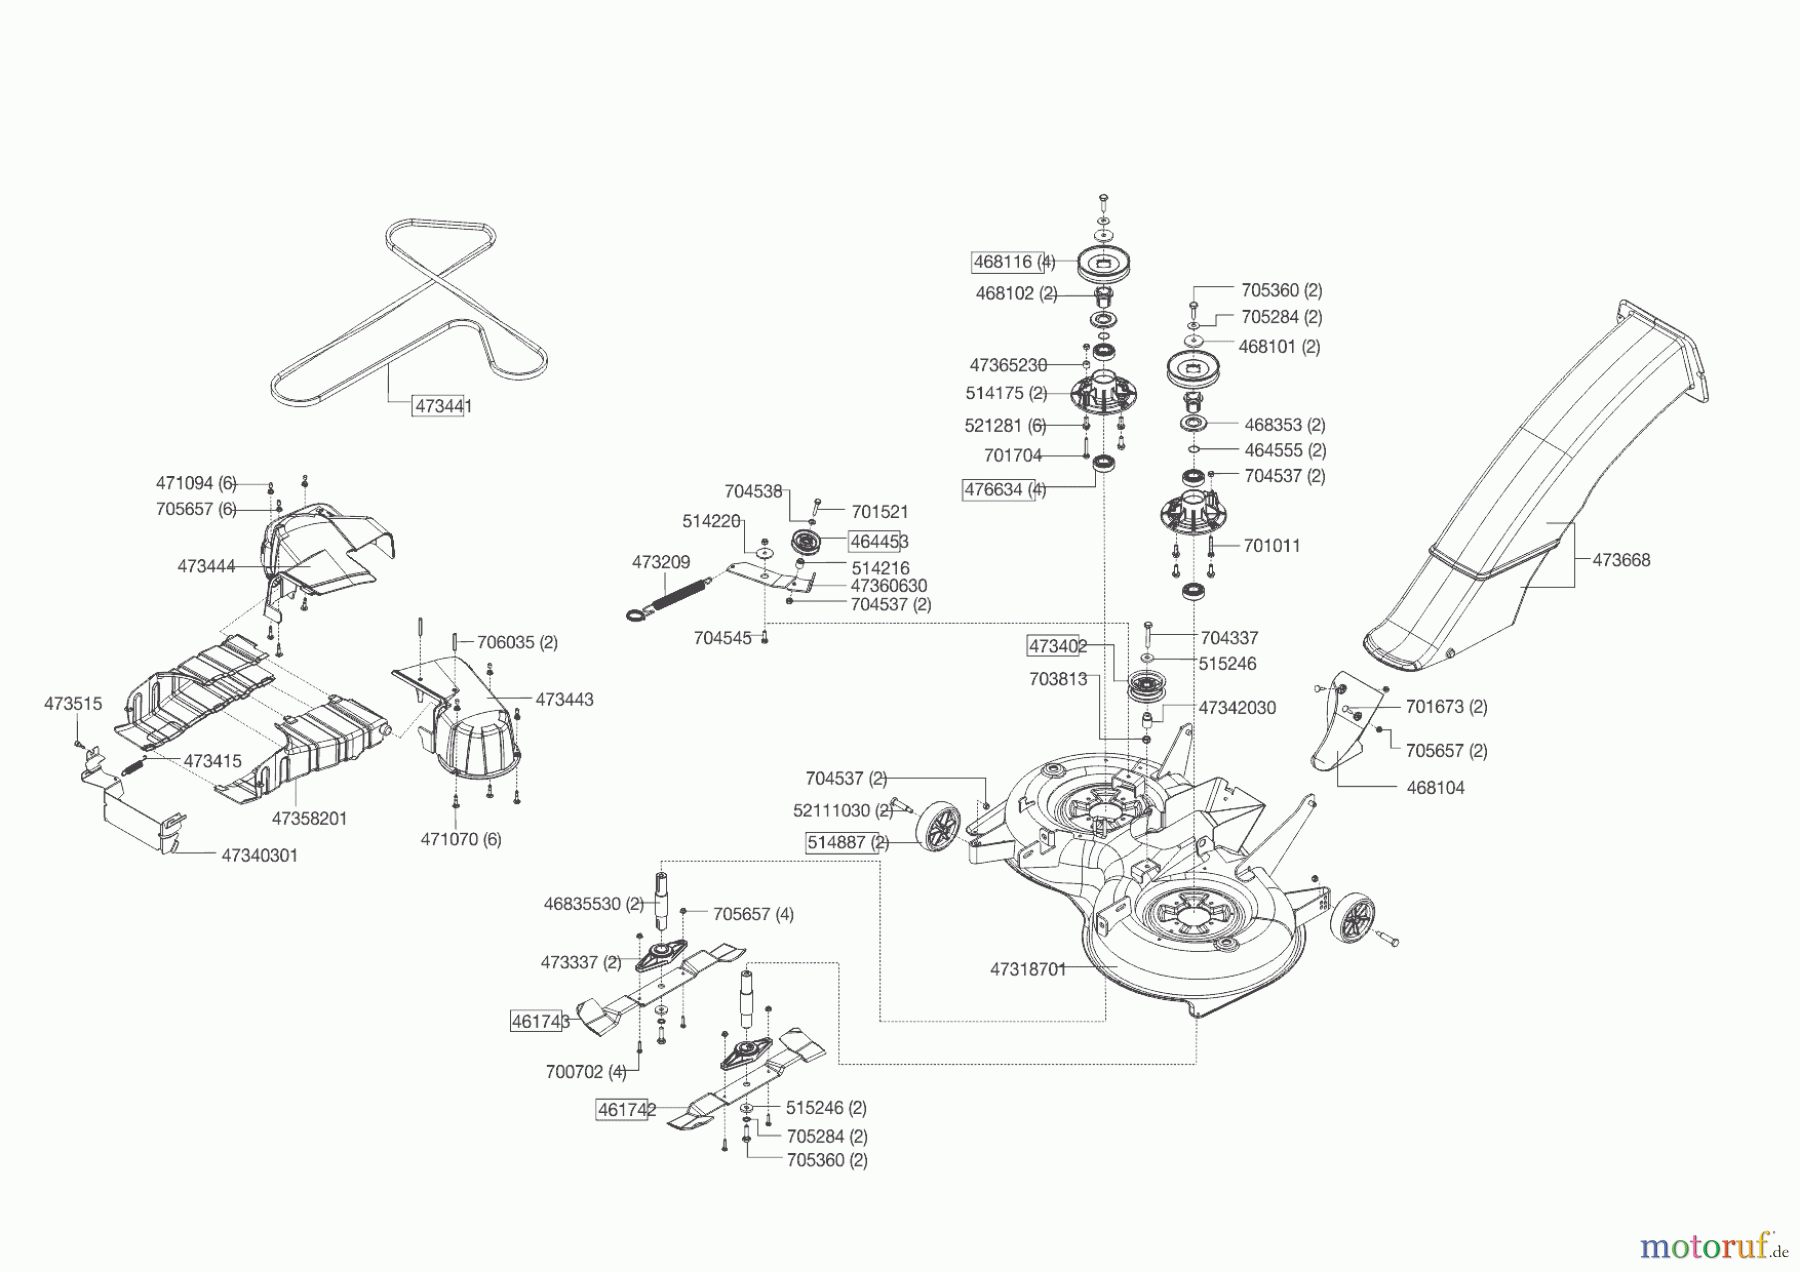  Powerline Gartentechnik Rasentraktor T 18-95.4 HD  ab 09/2016 Seite 6